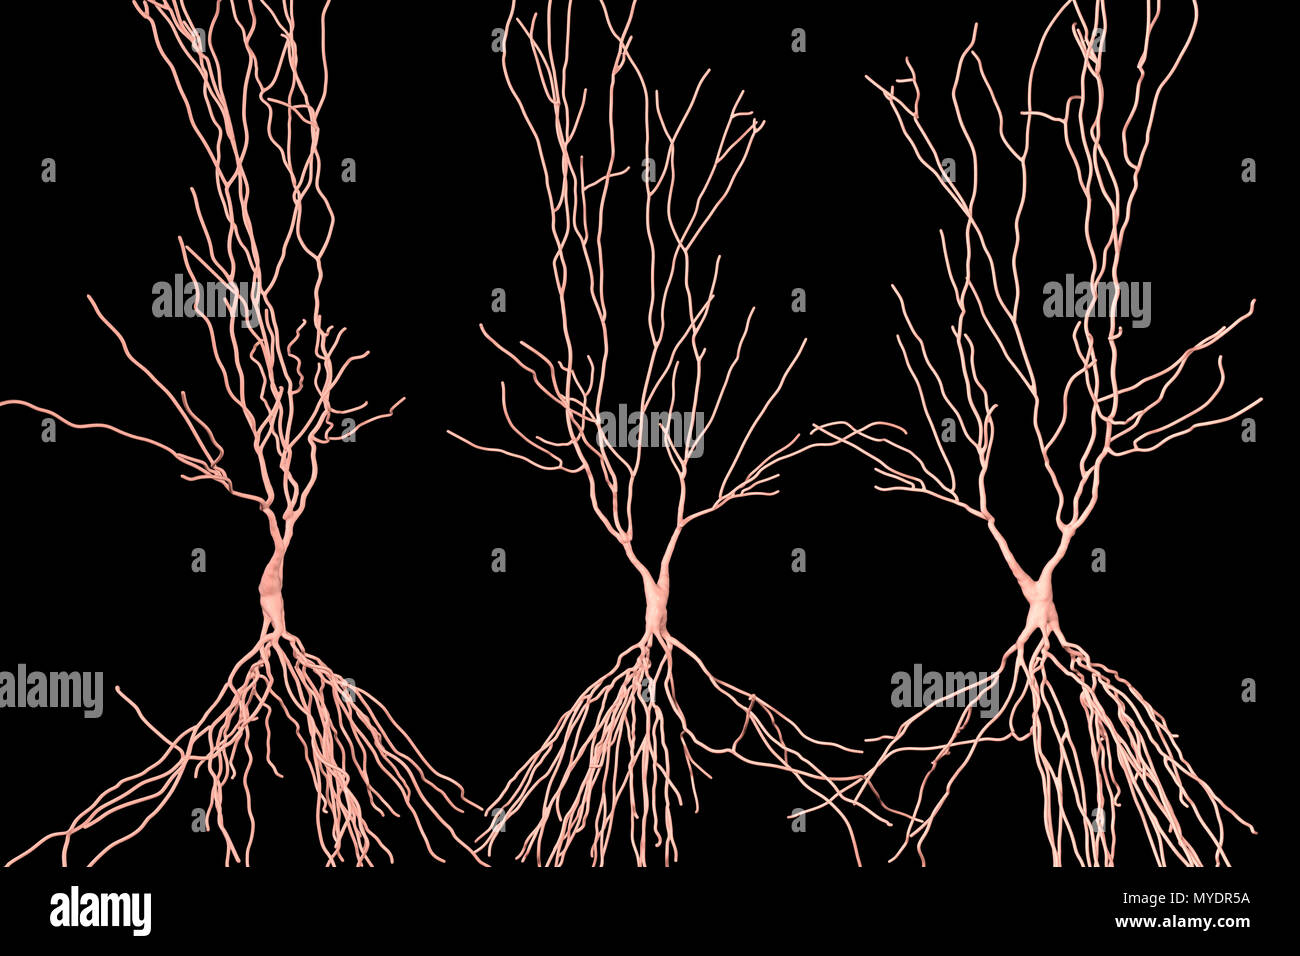 Hippocampe neurone, illustration de l'ordinateur. L'hippocampe chez les humains est la structure dans le cerveau responsable de la mémoire à long terme. Banque D'Images